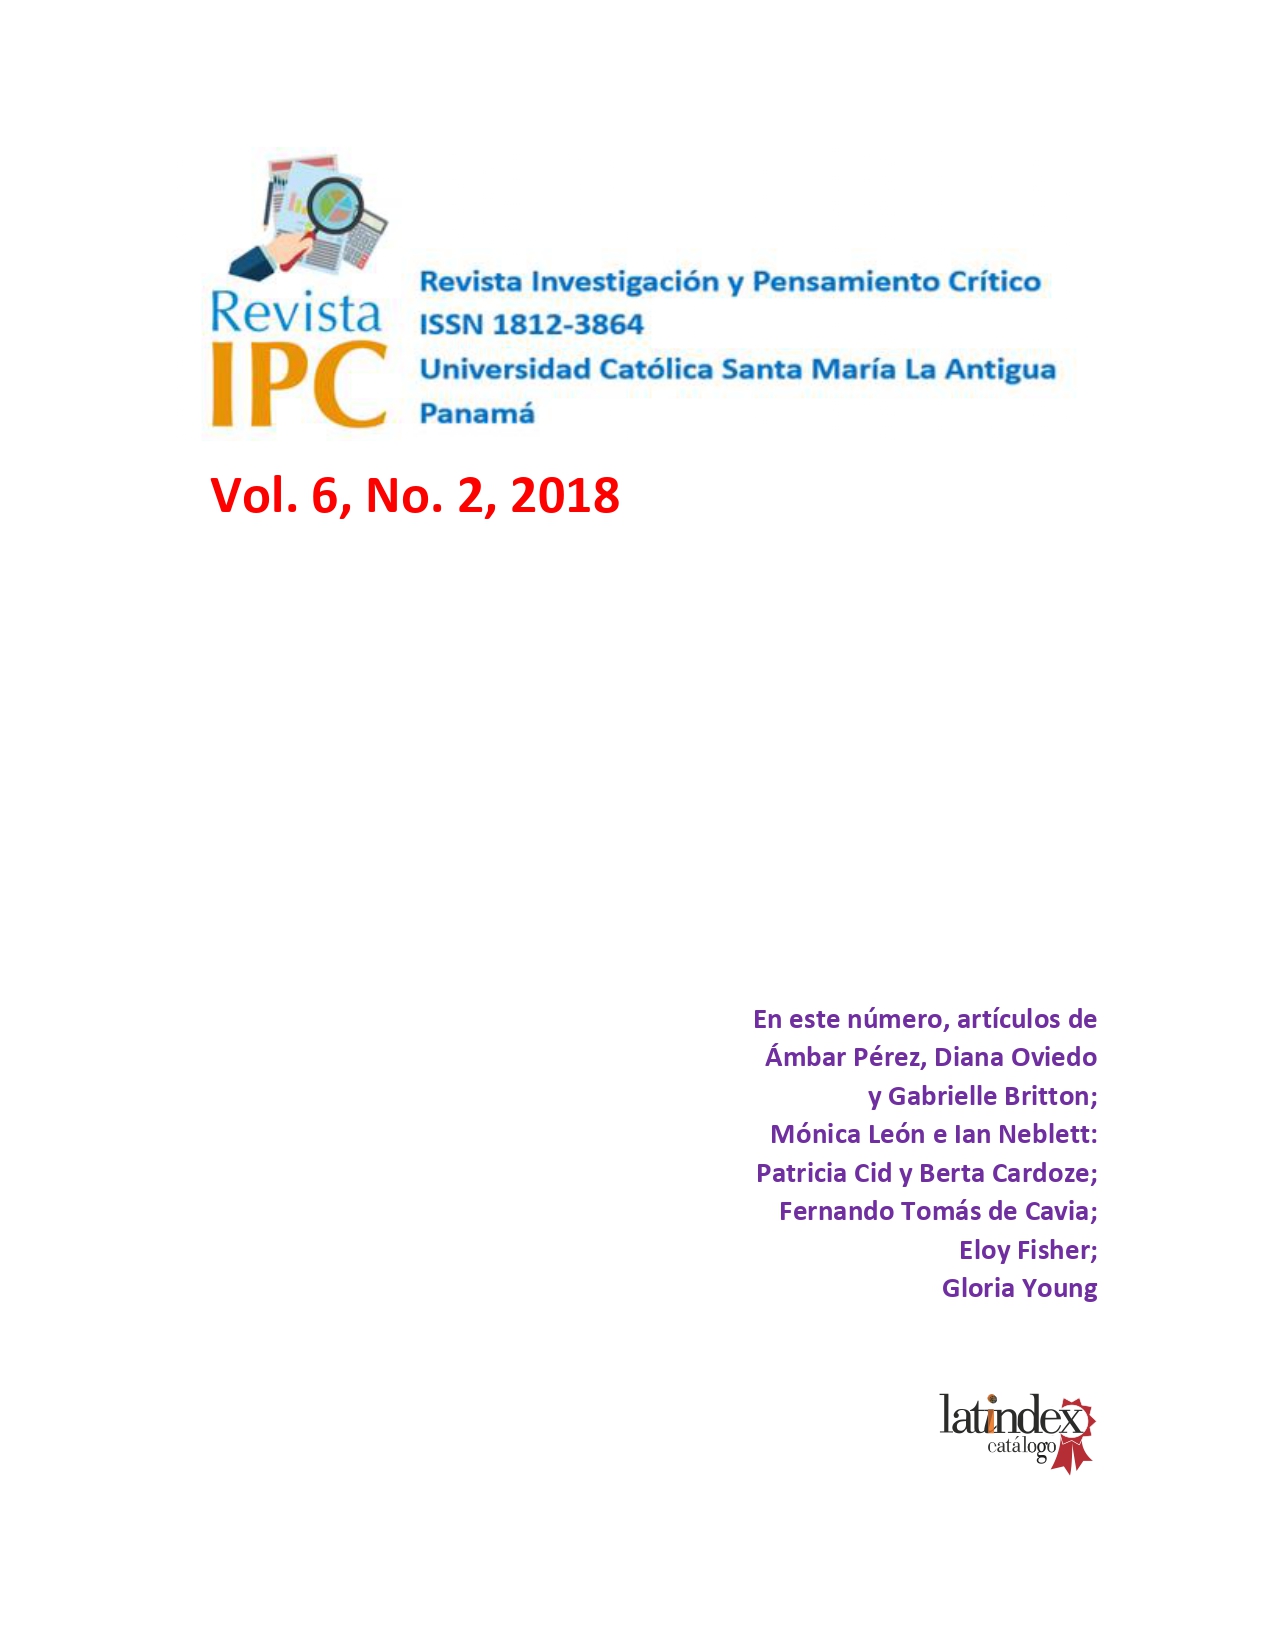 Imagen revista IPC, volumen 6, número 2, año 2018